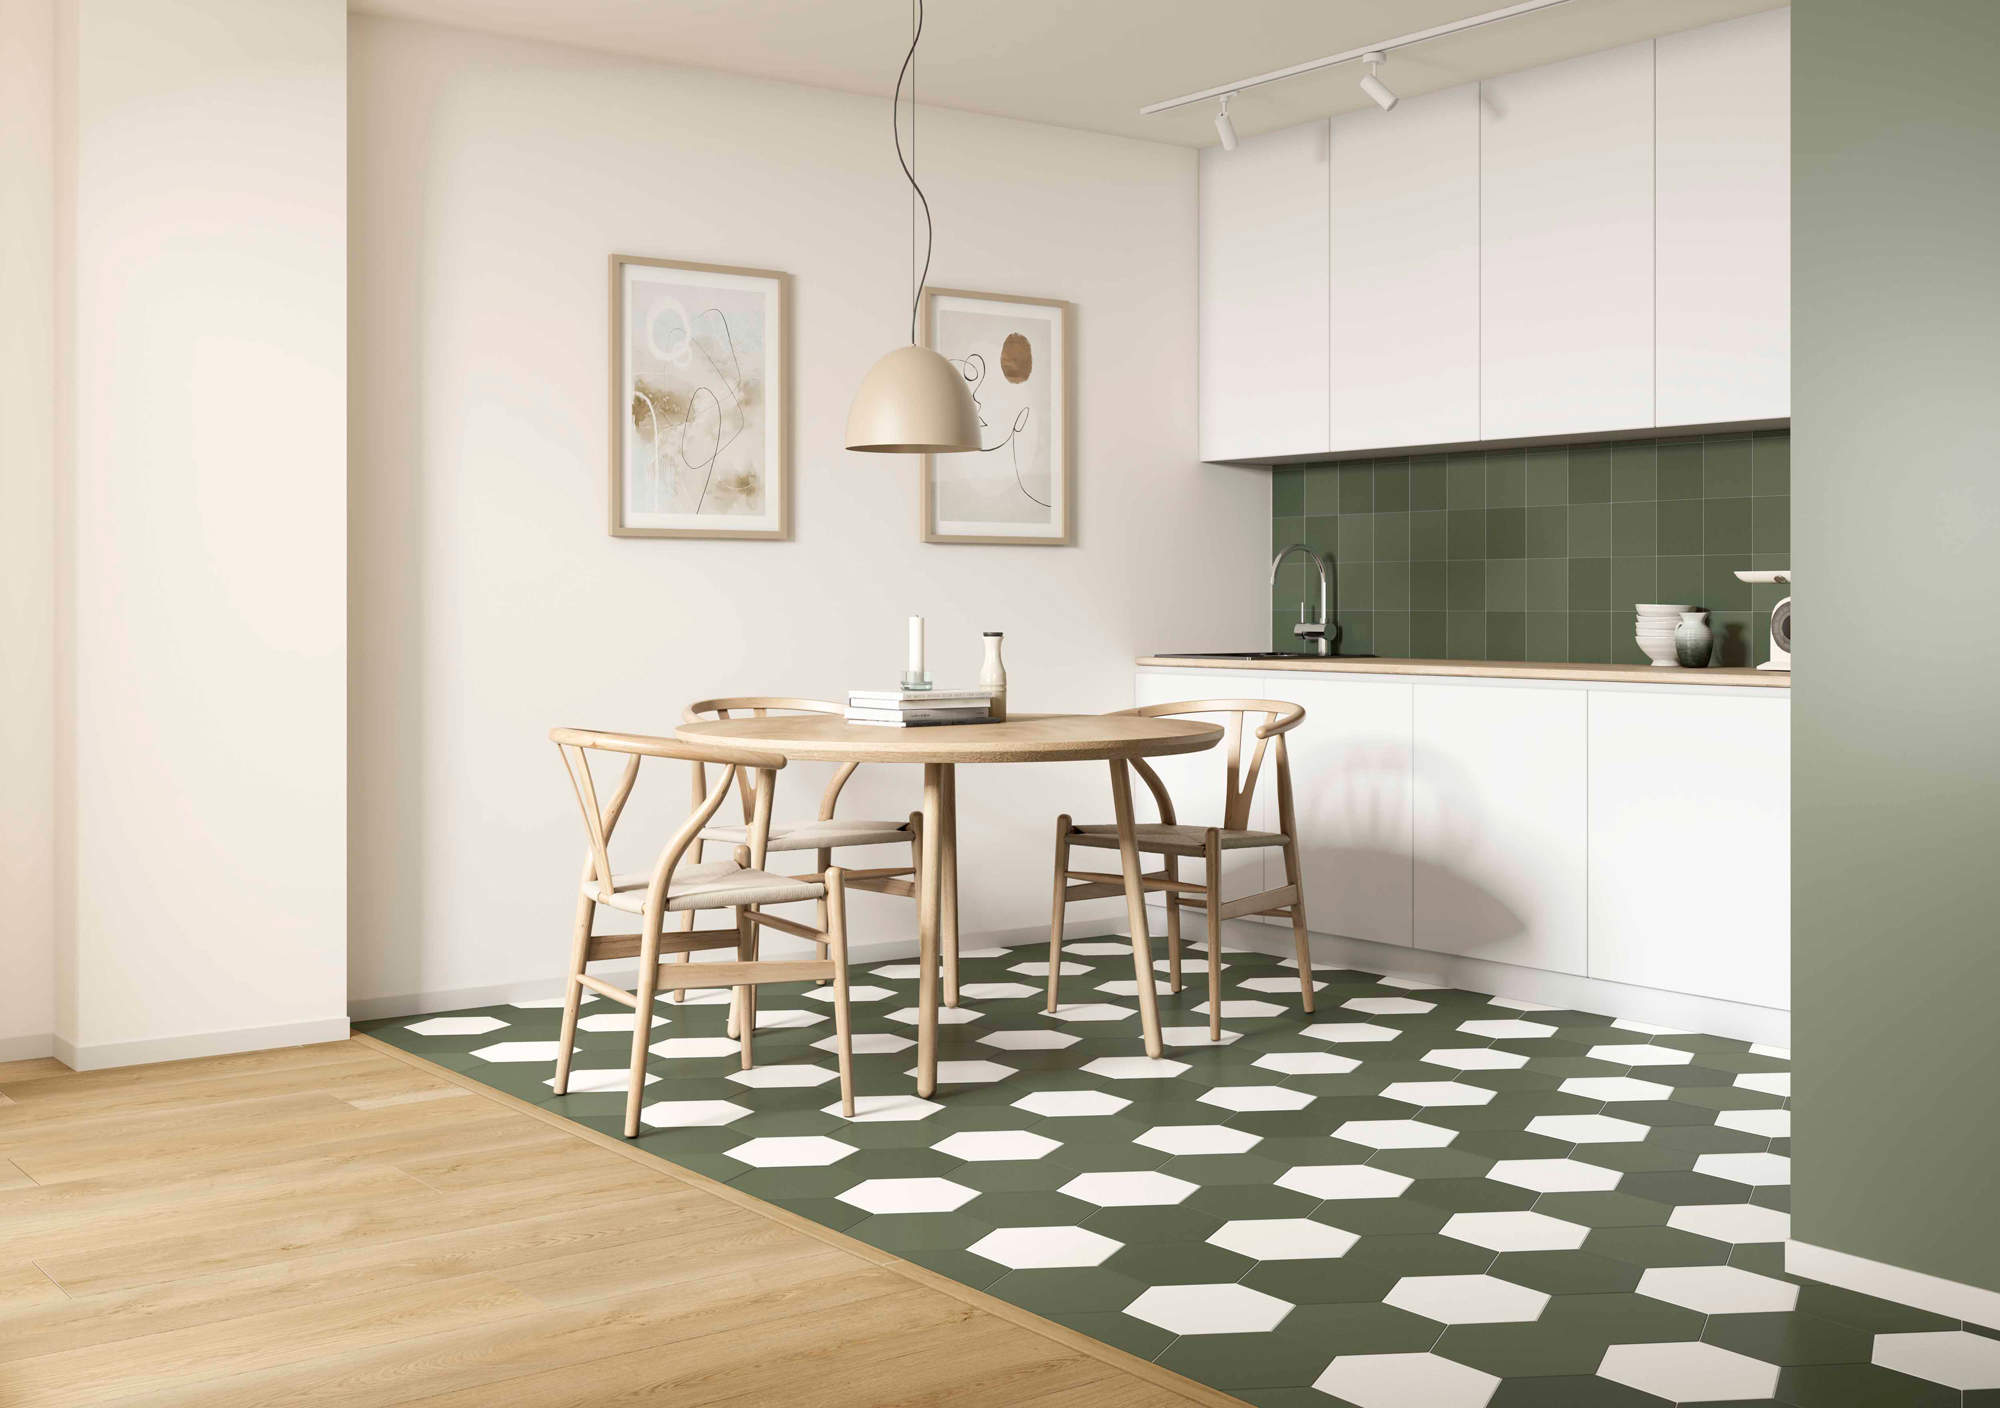 Cocina con muebles blancos y azulejos de color verde en suelo y pared.